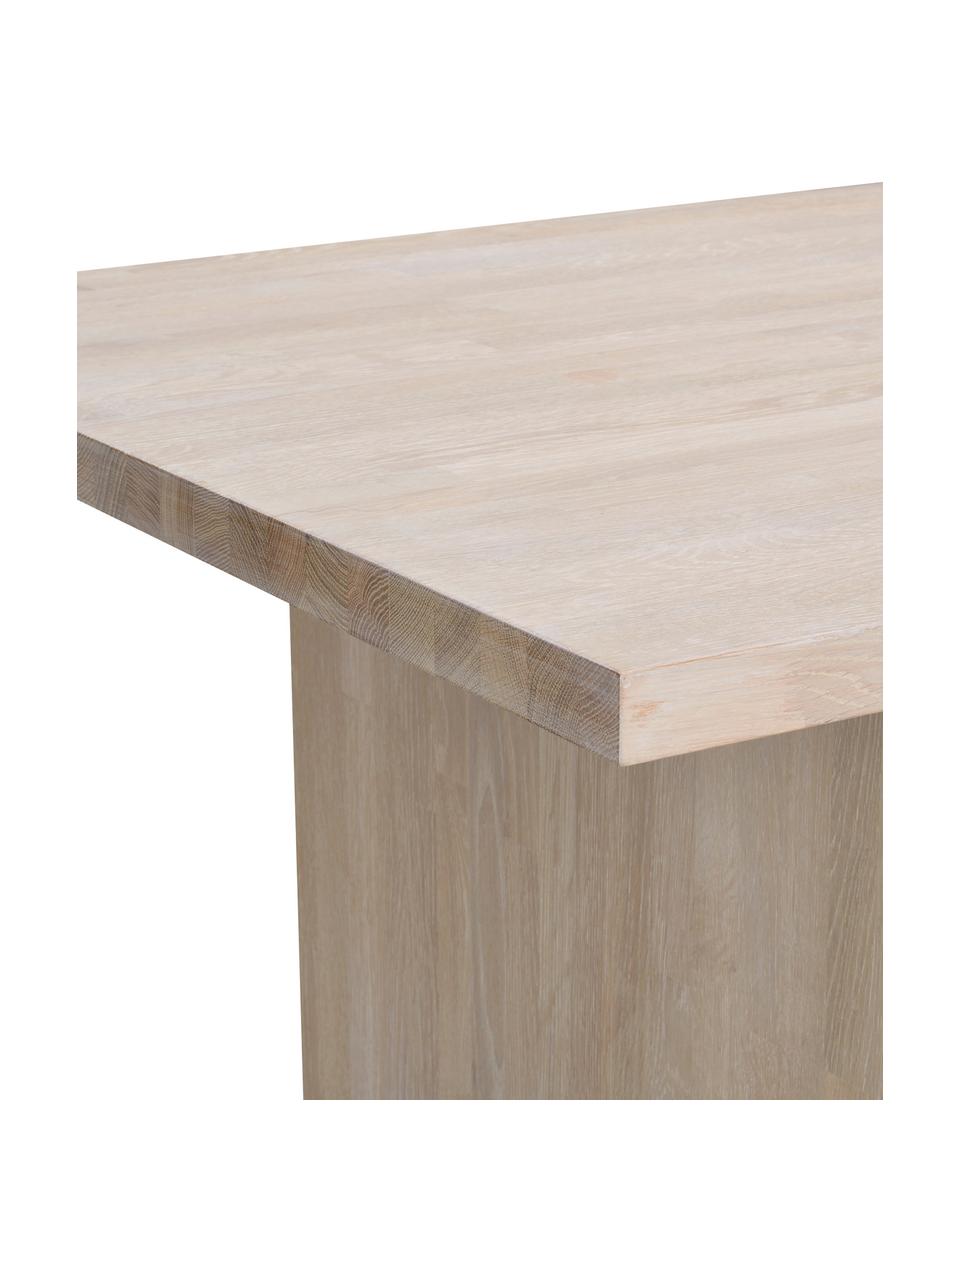 Table en bois de chêne Emmett, 240 x 95 cm, Bois de chêne, huilé, certifié FSC, Bois de chêne clair, larg. 240 x prof. 95 cm